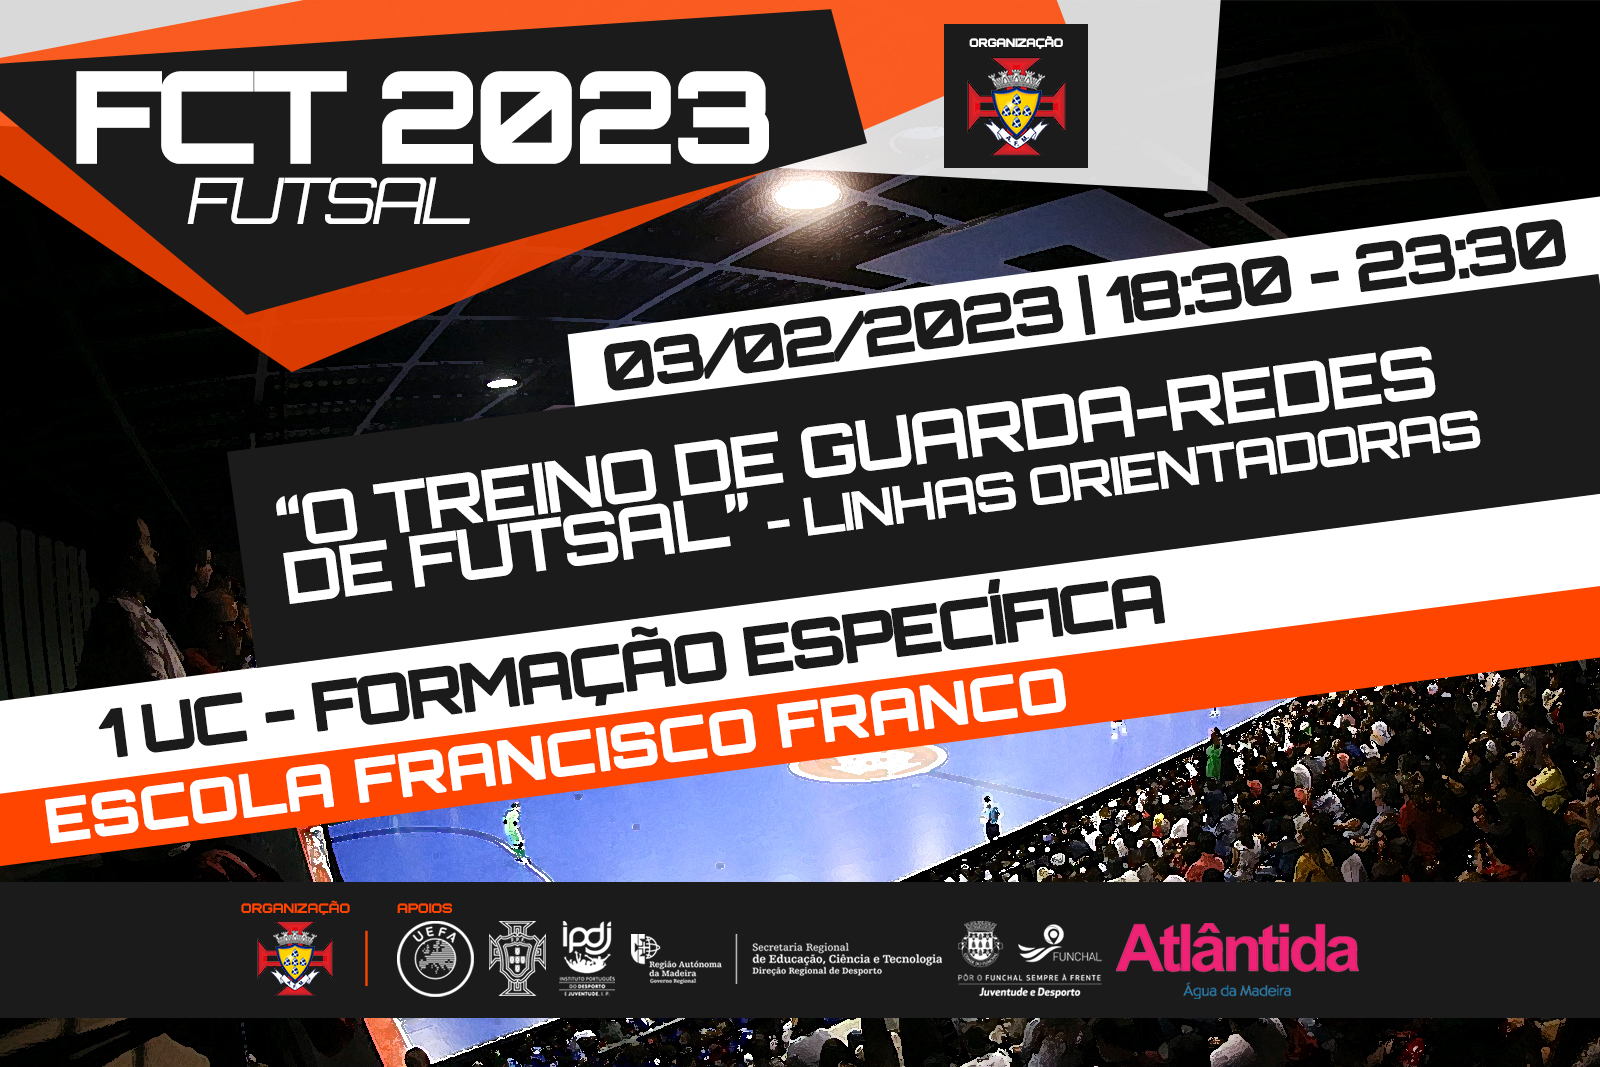 FCT 2023 - O Treino de Guarda-Redes de Futsal